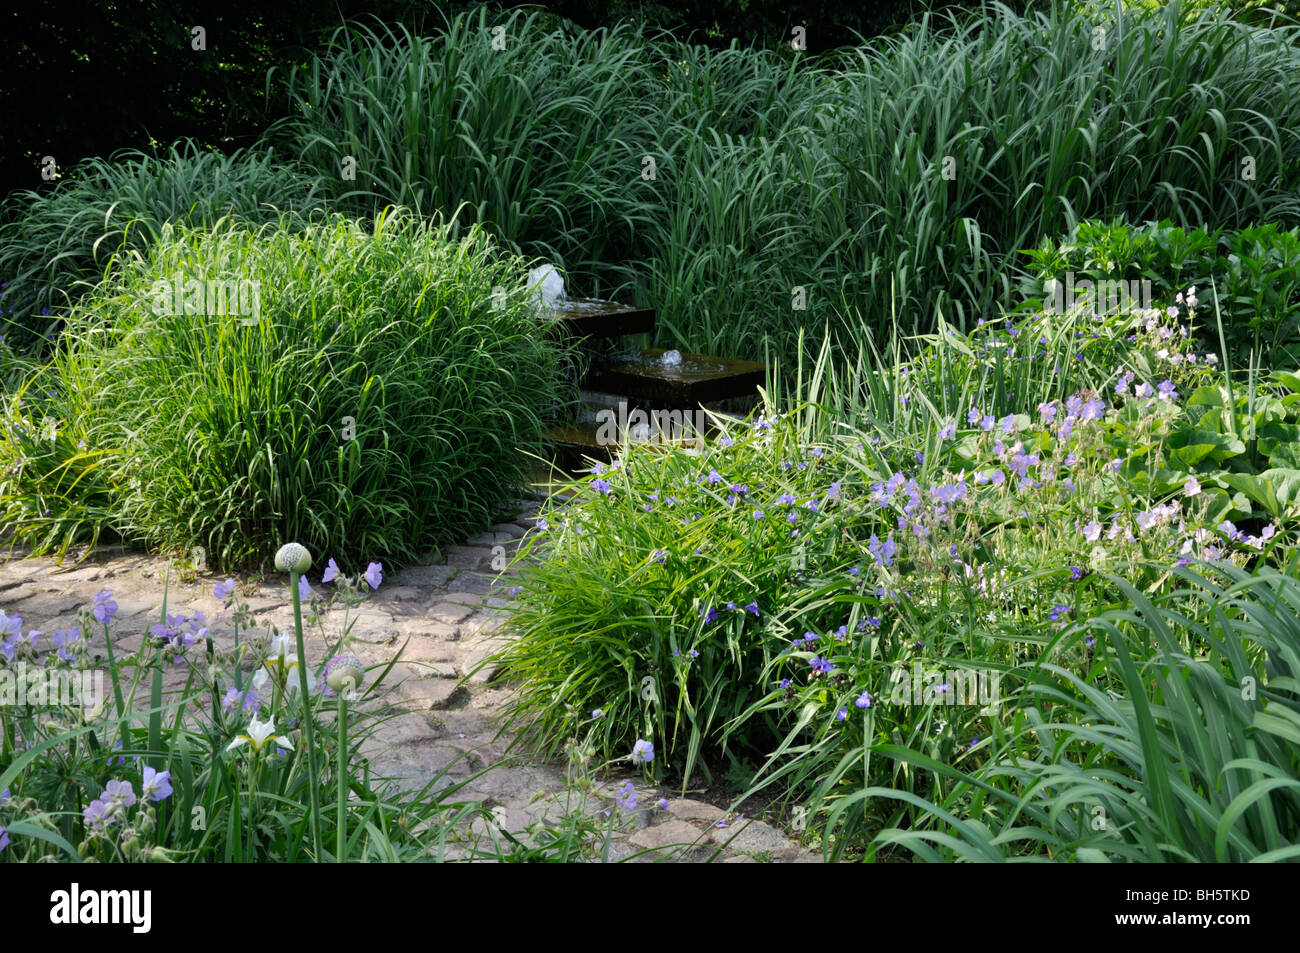 Jardin de plantes vivaces avec fontaine Banque D'Images